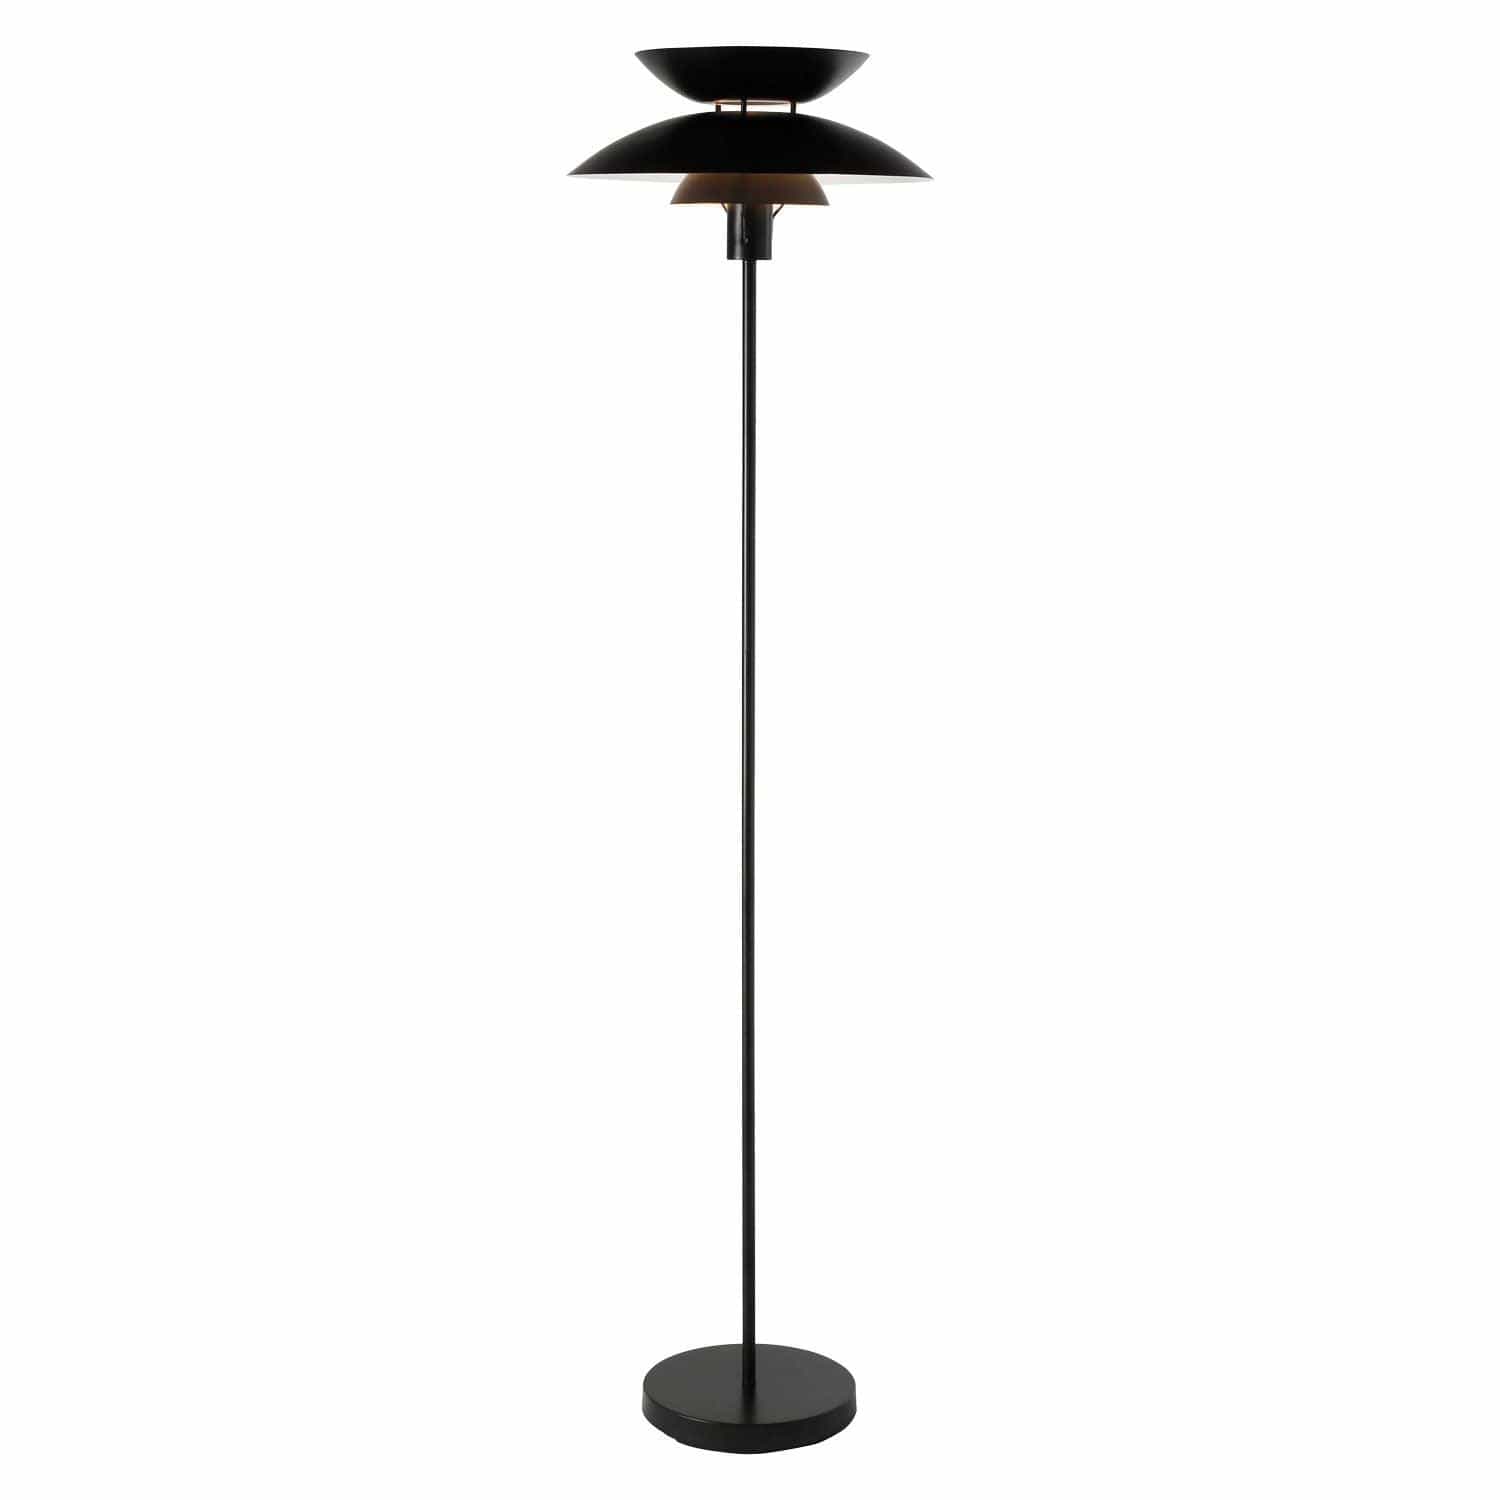 Domus Lighting Floor Lamps BLACK Allegra-Fl Floor Lamp 1 X E27 240V By Domus Lighting Lights-For-You 22707